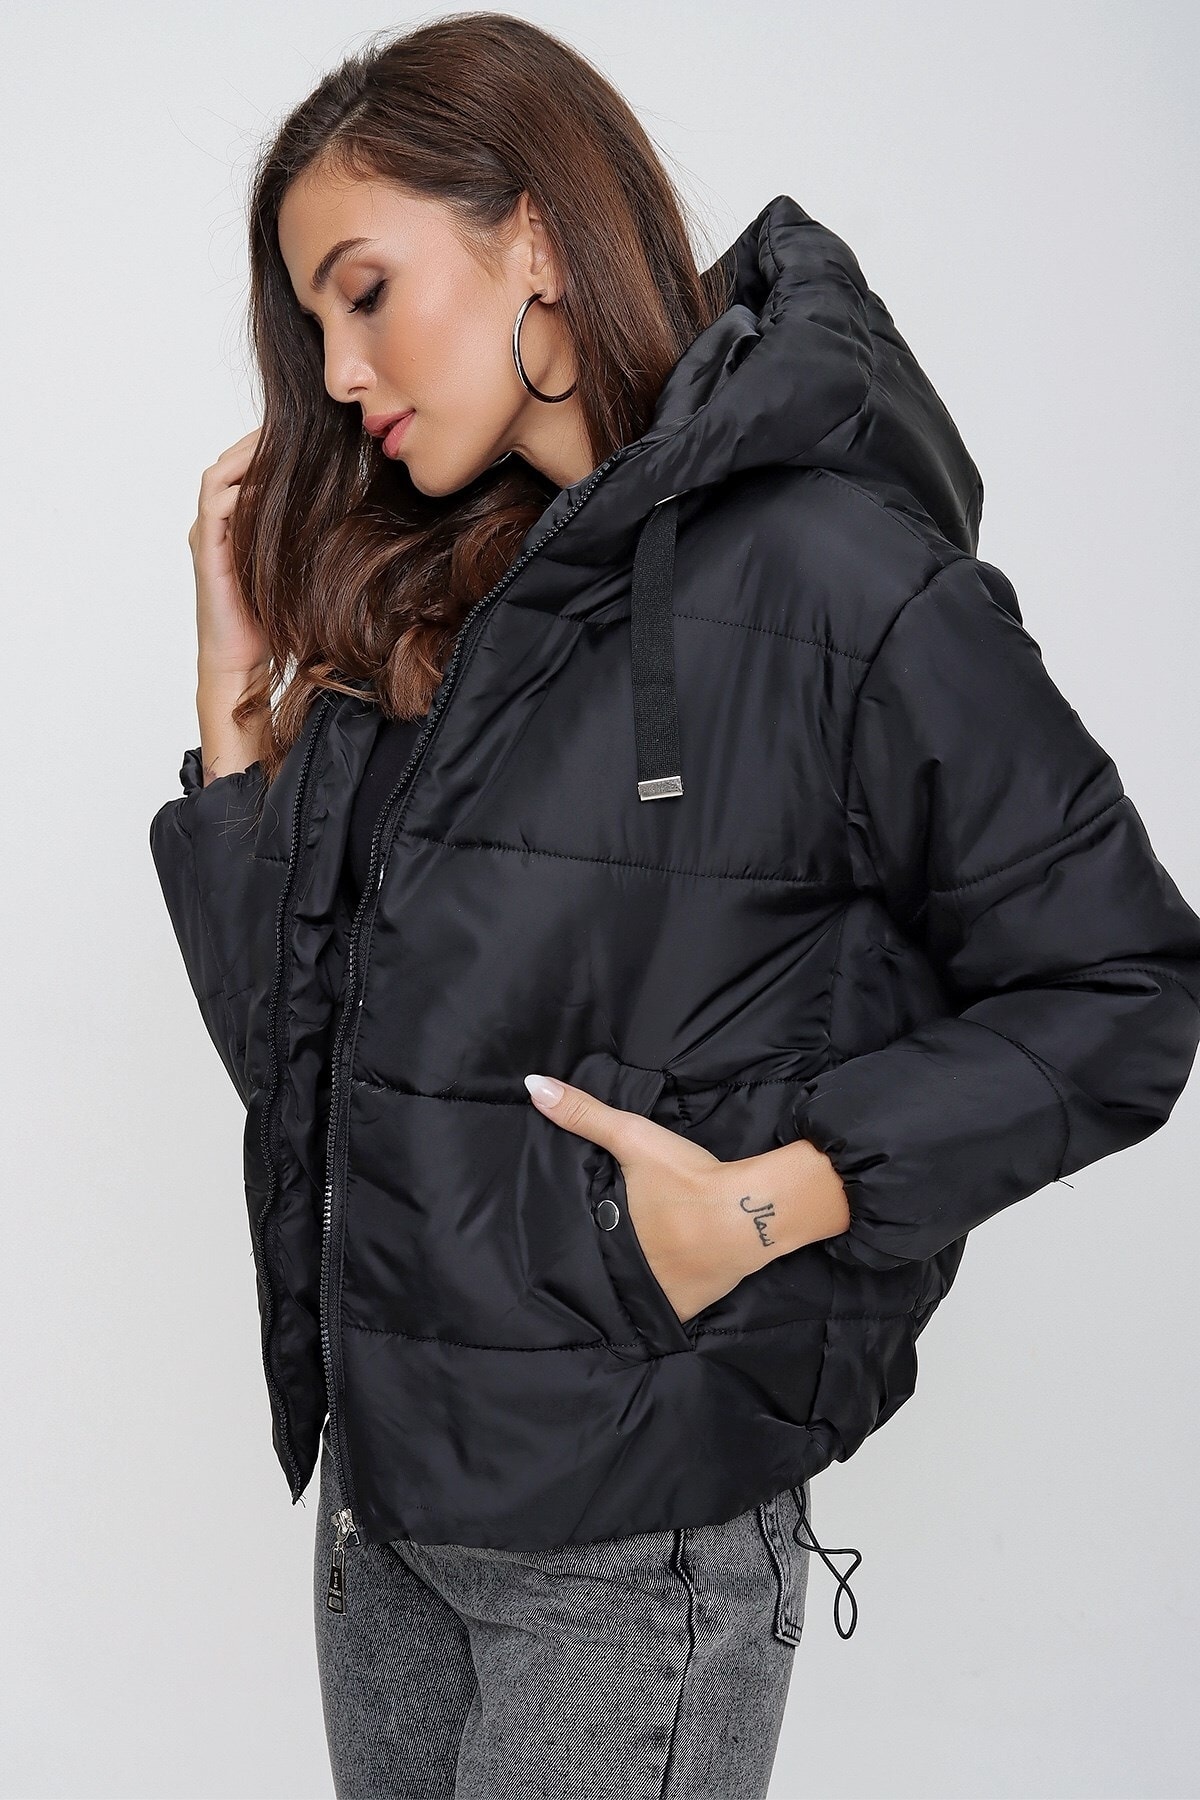 Levně By Saygı Dámský černý nafukovací kabát s elastickým pasem, kapsou a podšitou kapucí